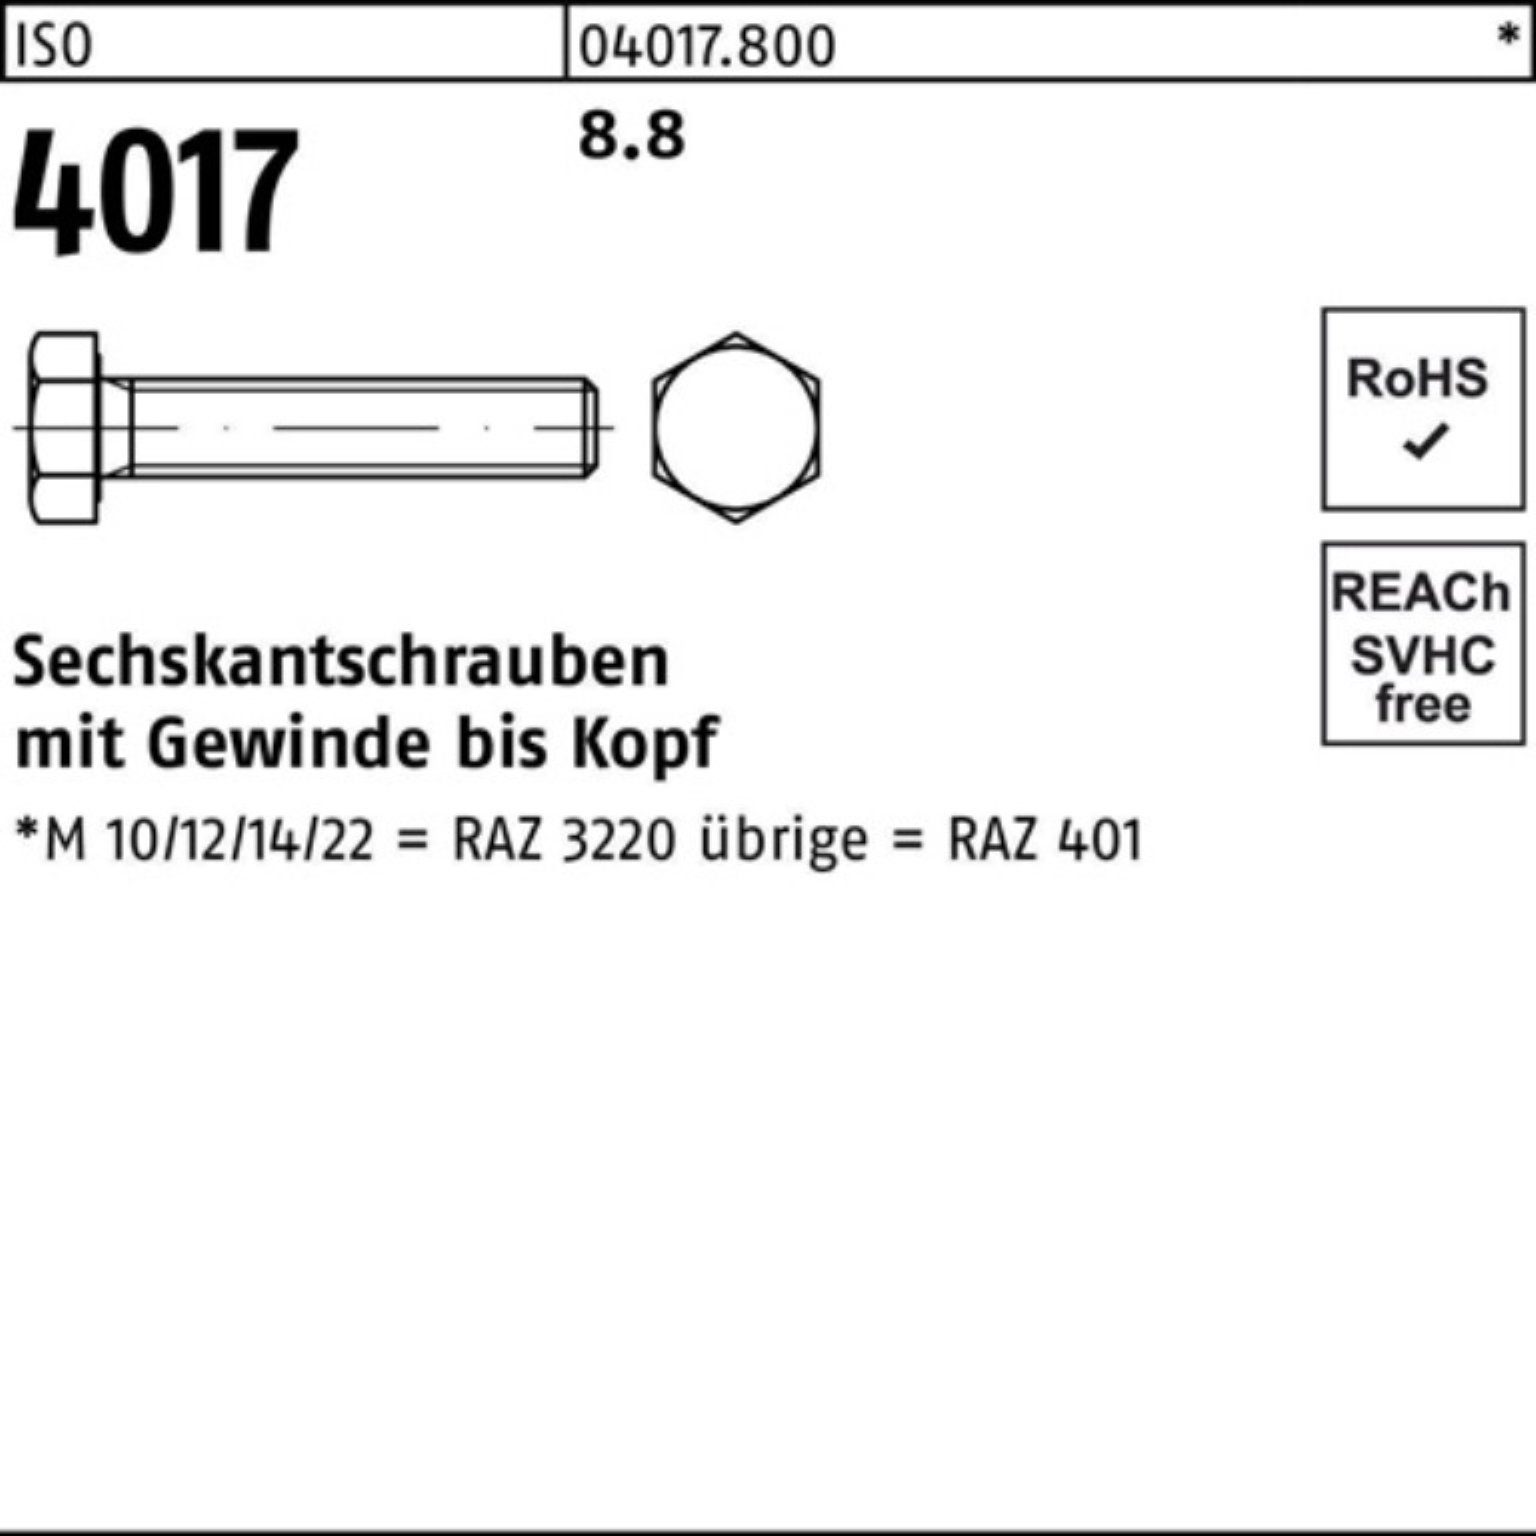 Sechskantschraube M12x Pack VG 4017 ISO ISO Sechskantschraube Stück 40 Bufab 8.8 100er 28 100